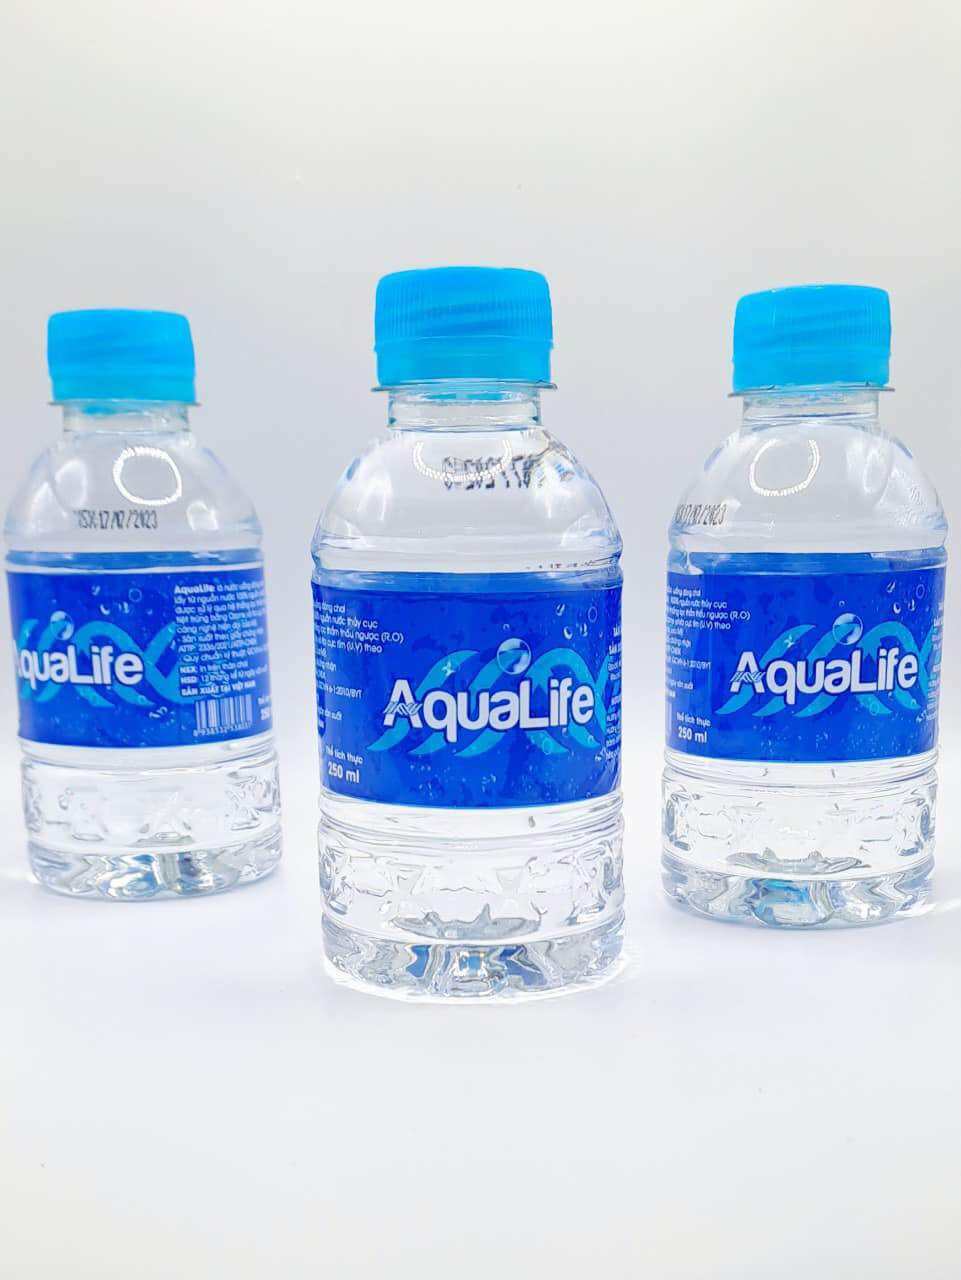 Nước suối chai nhỏ 250ml Aqualife giá rẻ phục vụ đám tiệc